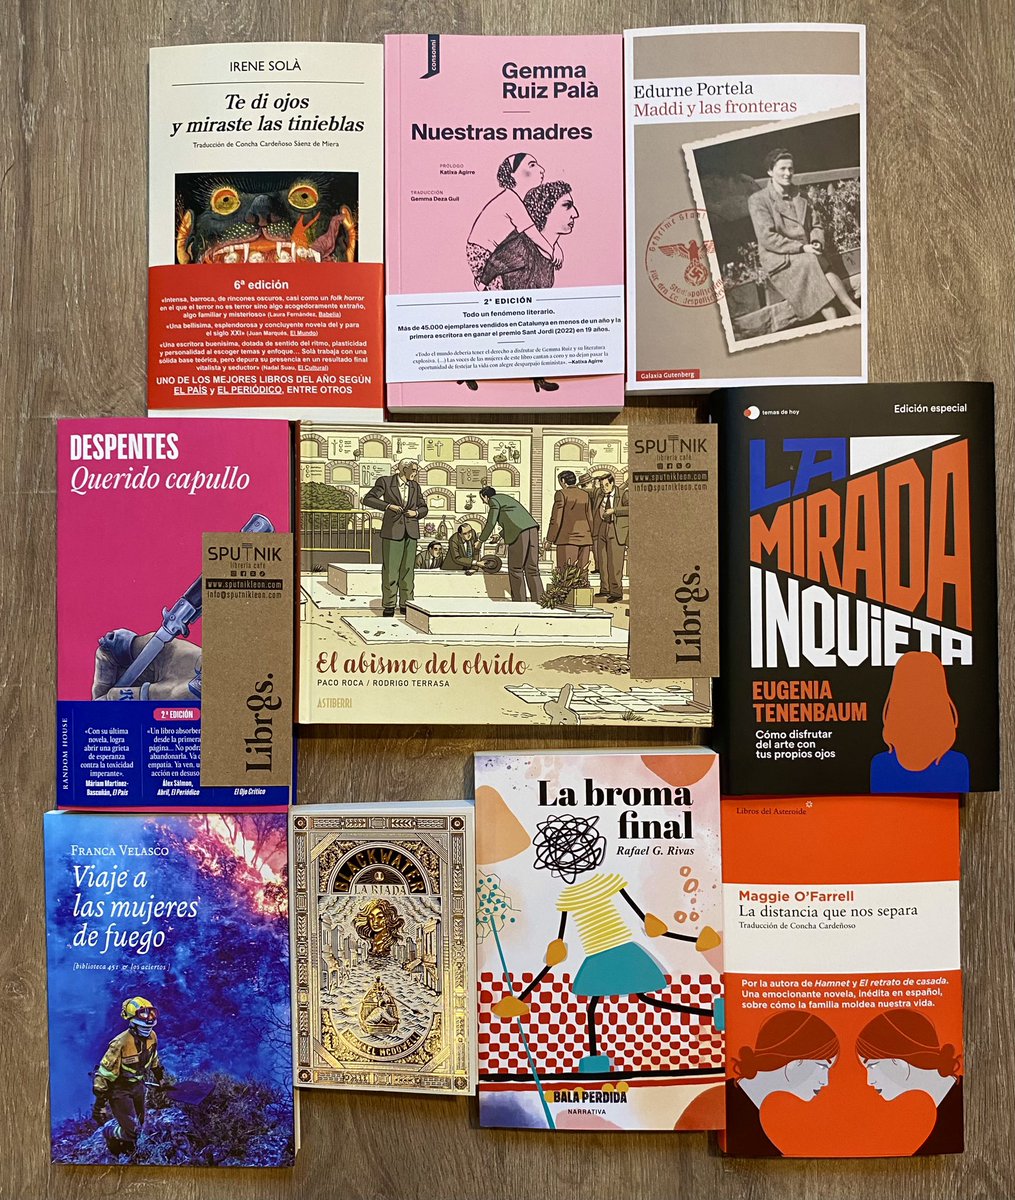 Estos son los libros más vendidos en Sputnik durante el primer cuatrimestre de 2024. ¡Enhorabuena! 🙌😘 @LibrosAsteroide @balaperdidaed @BlackieBooks @pepitaseditora @vallisoledades @los_aciertos @temasdehoy @Astiberri @randomhouse_es @G_Gutenberg @_consonni_ @gemmaruiz_